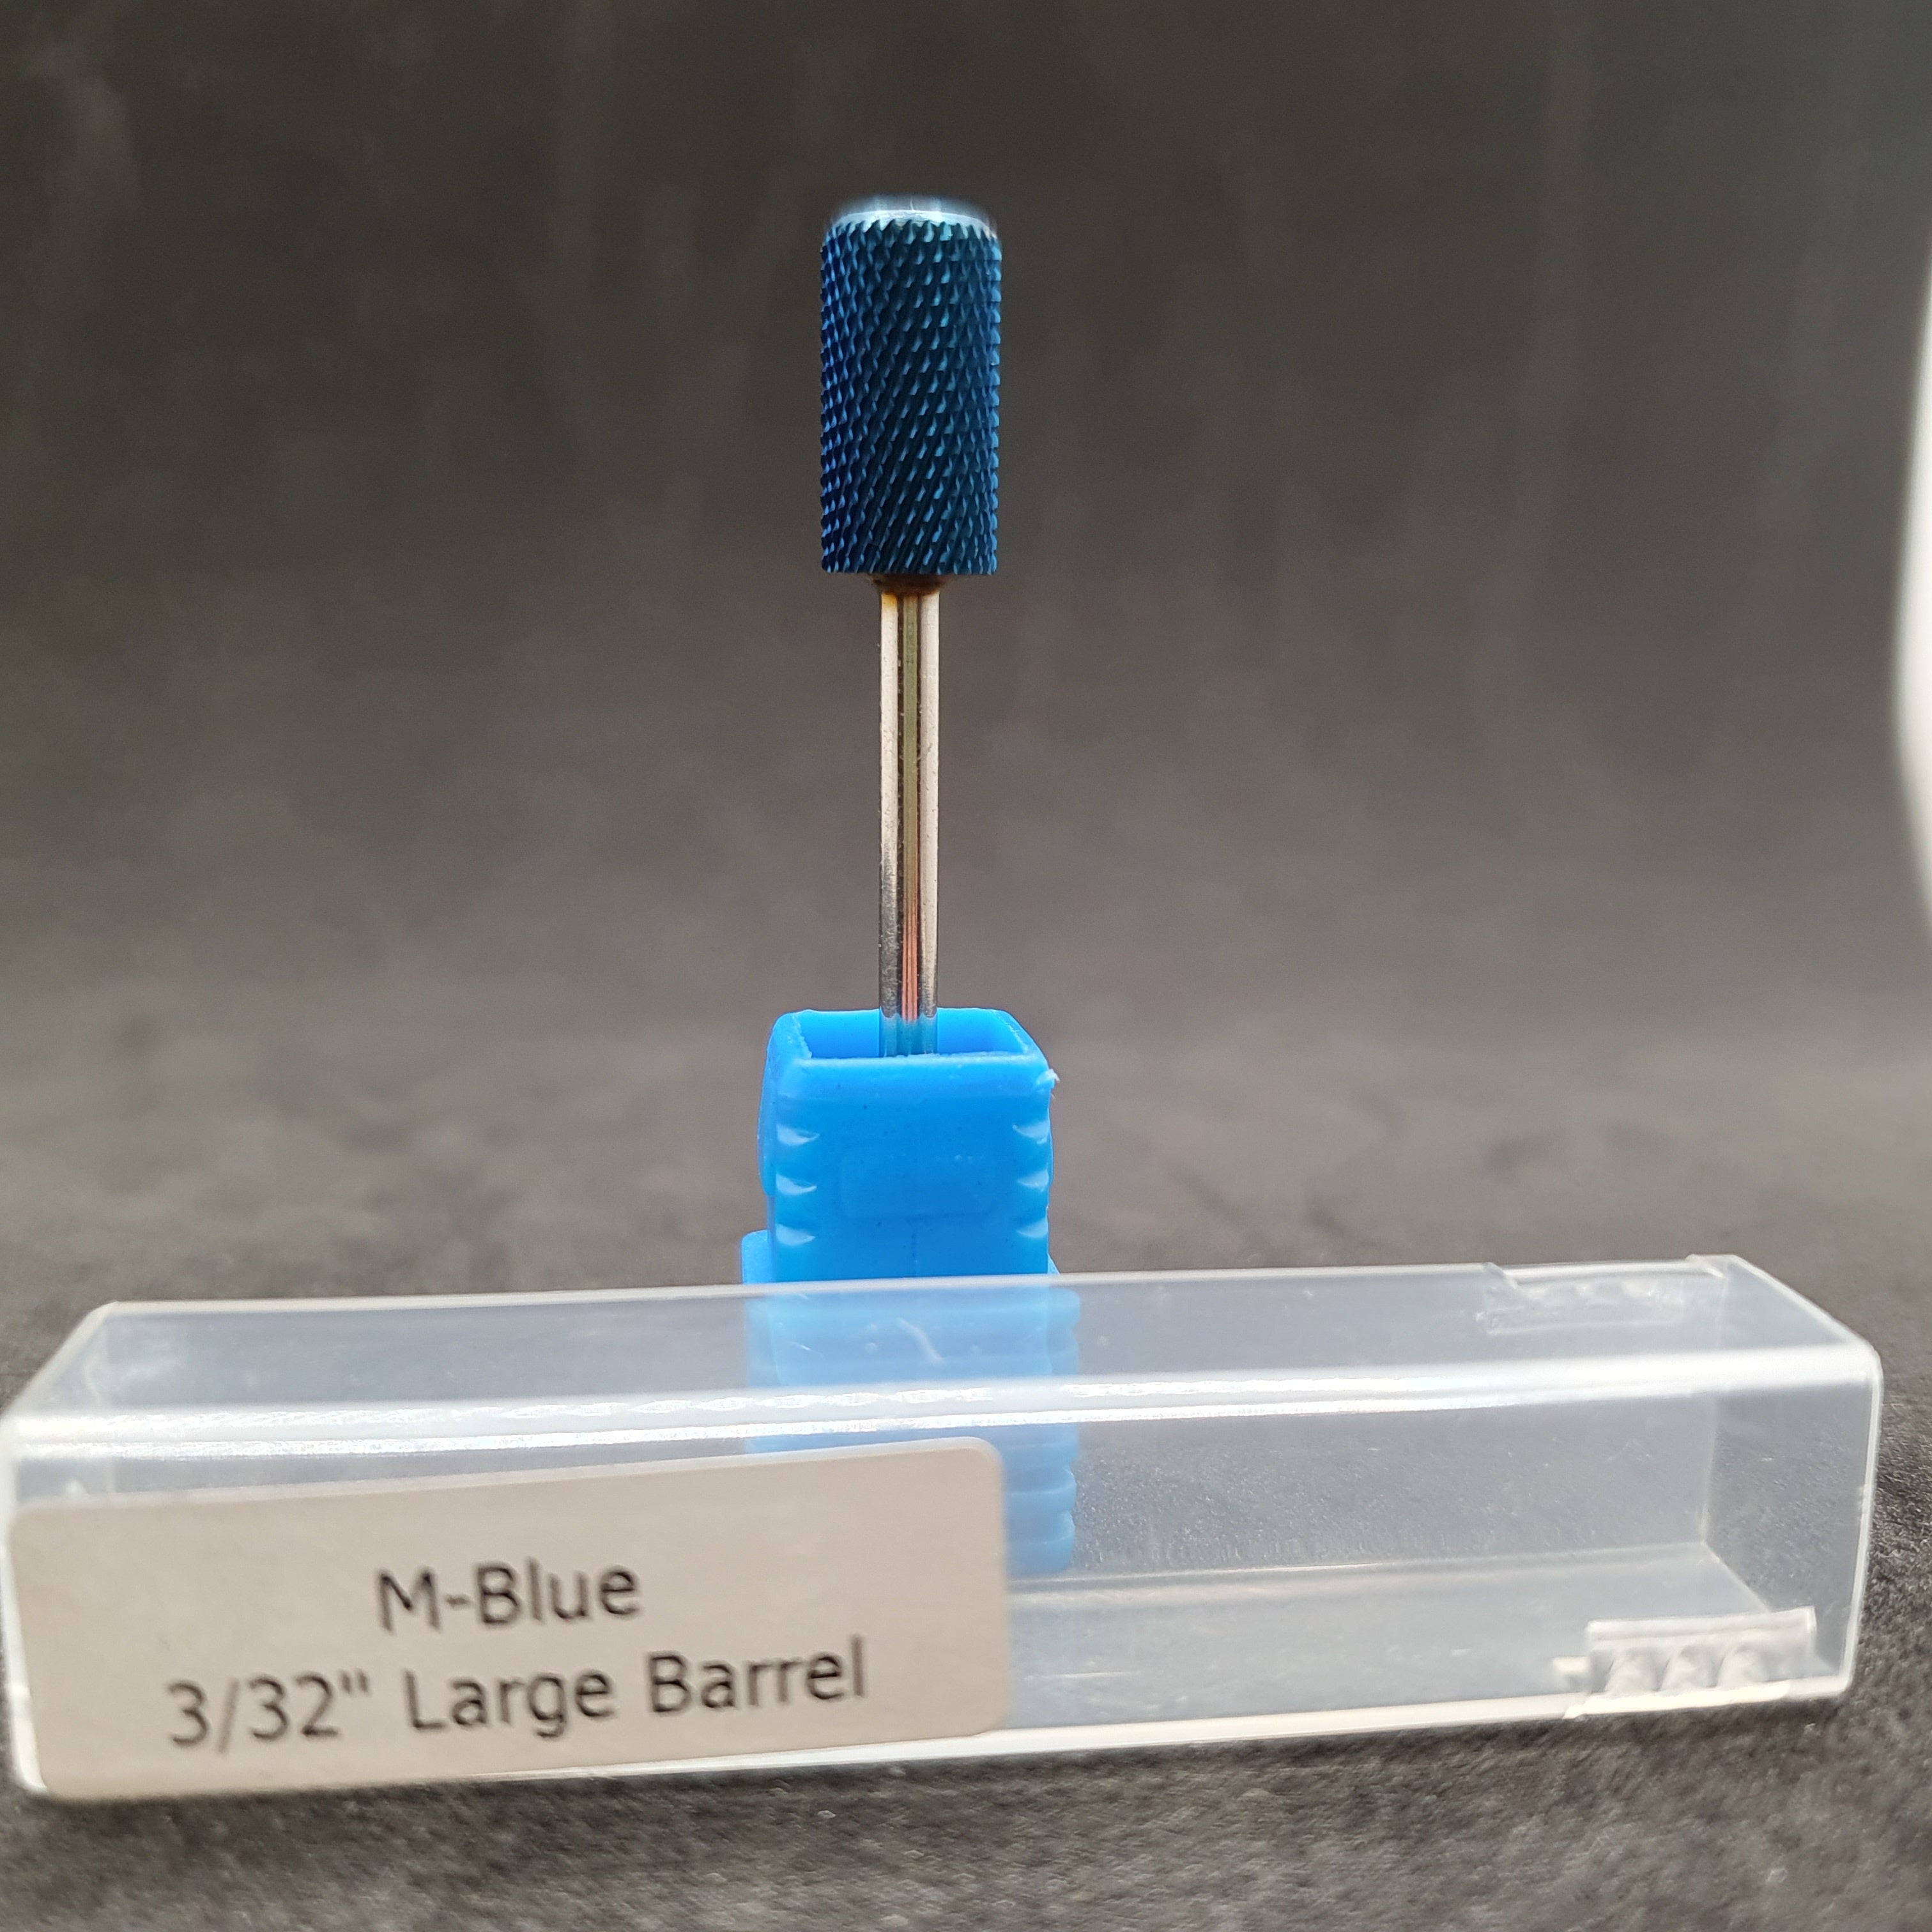 M-BLUE 3/32 " LARGE BARREL DRILL BIT